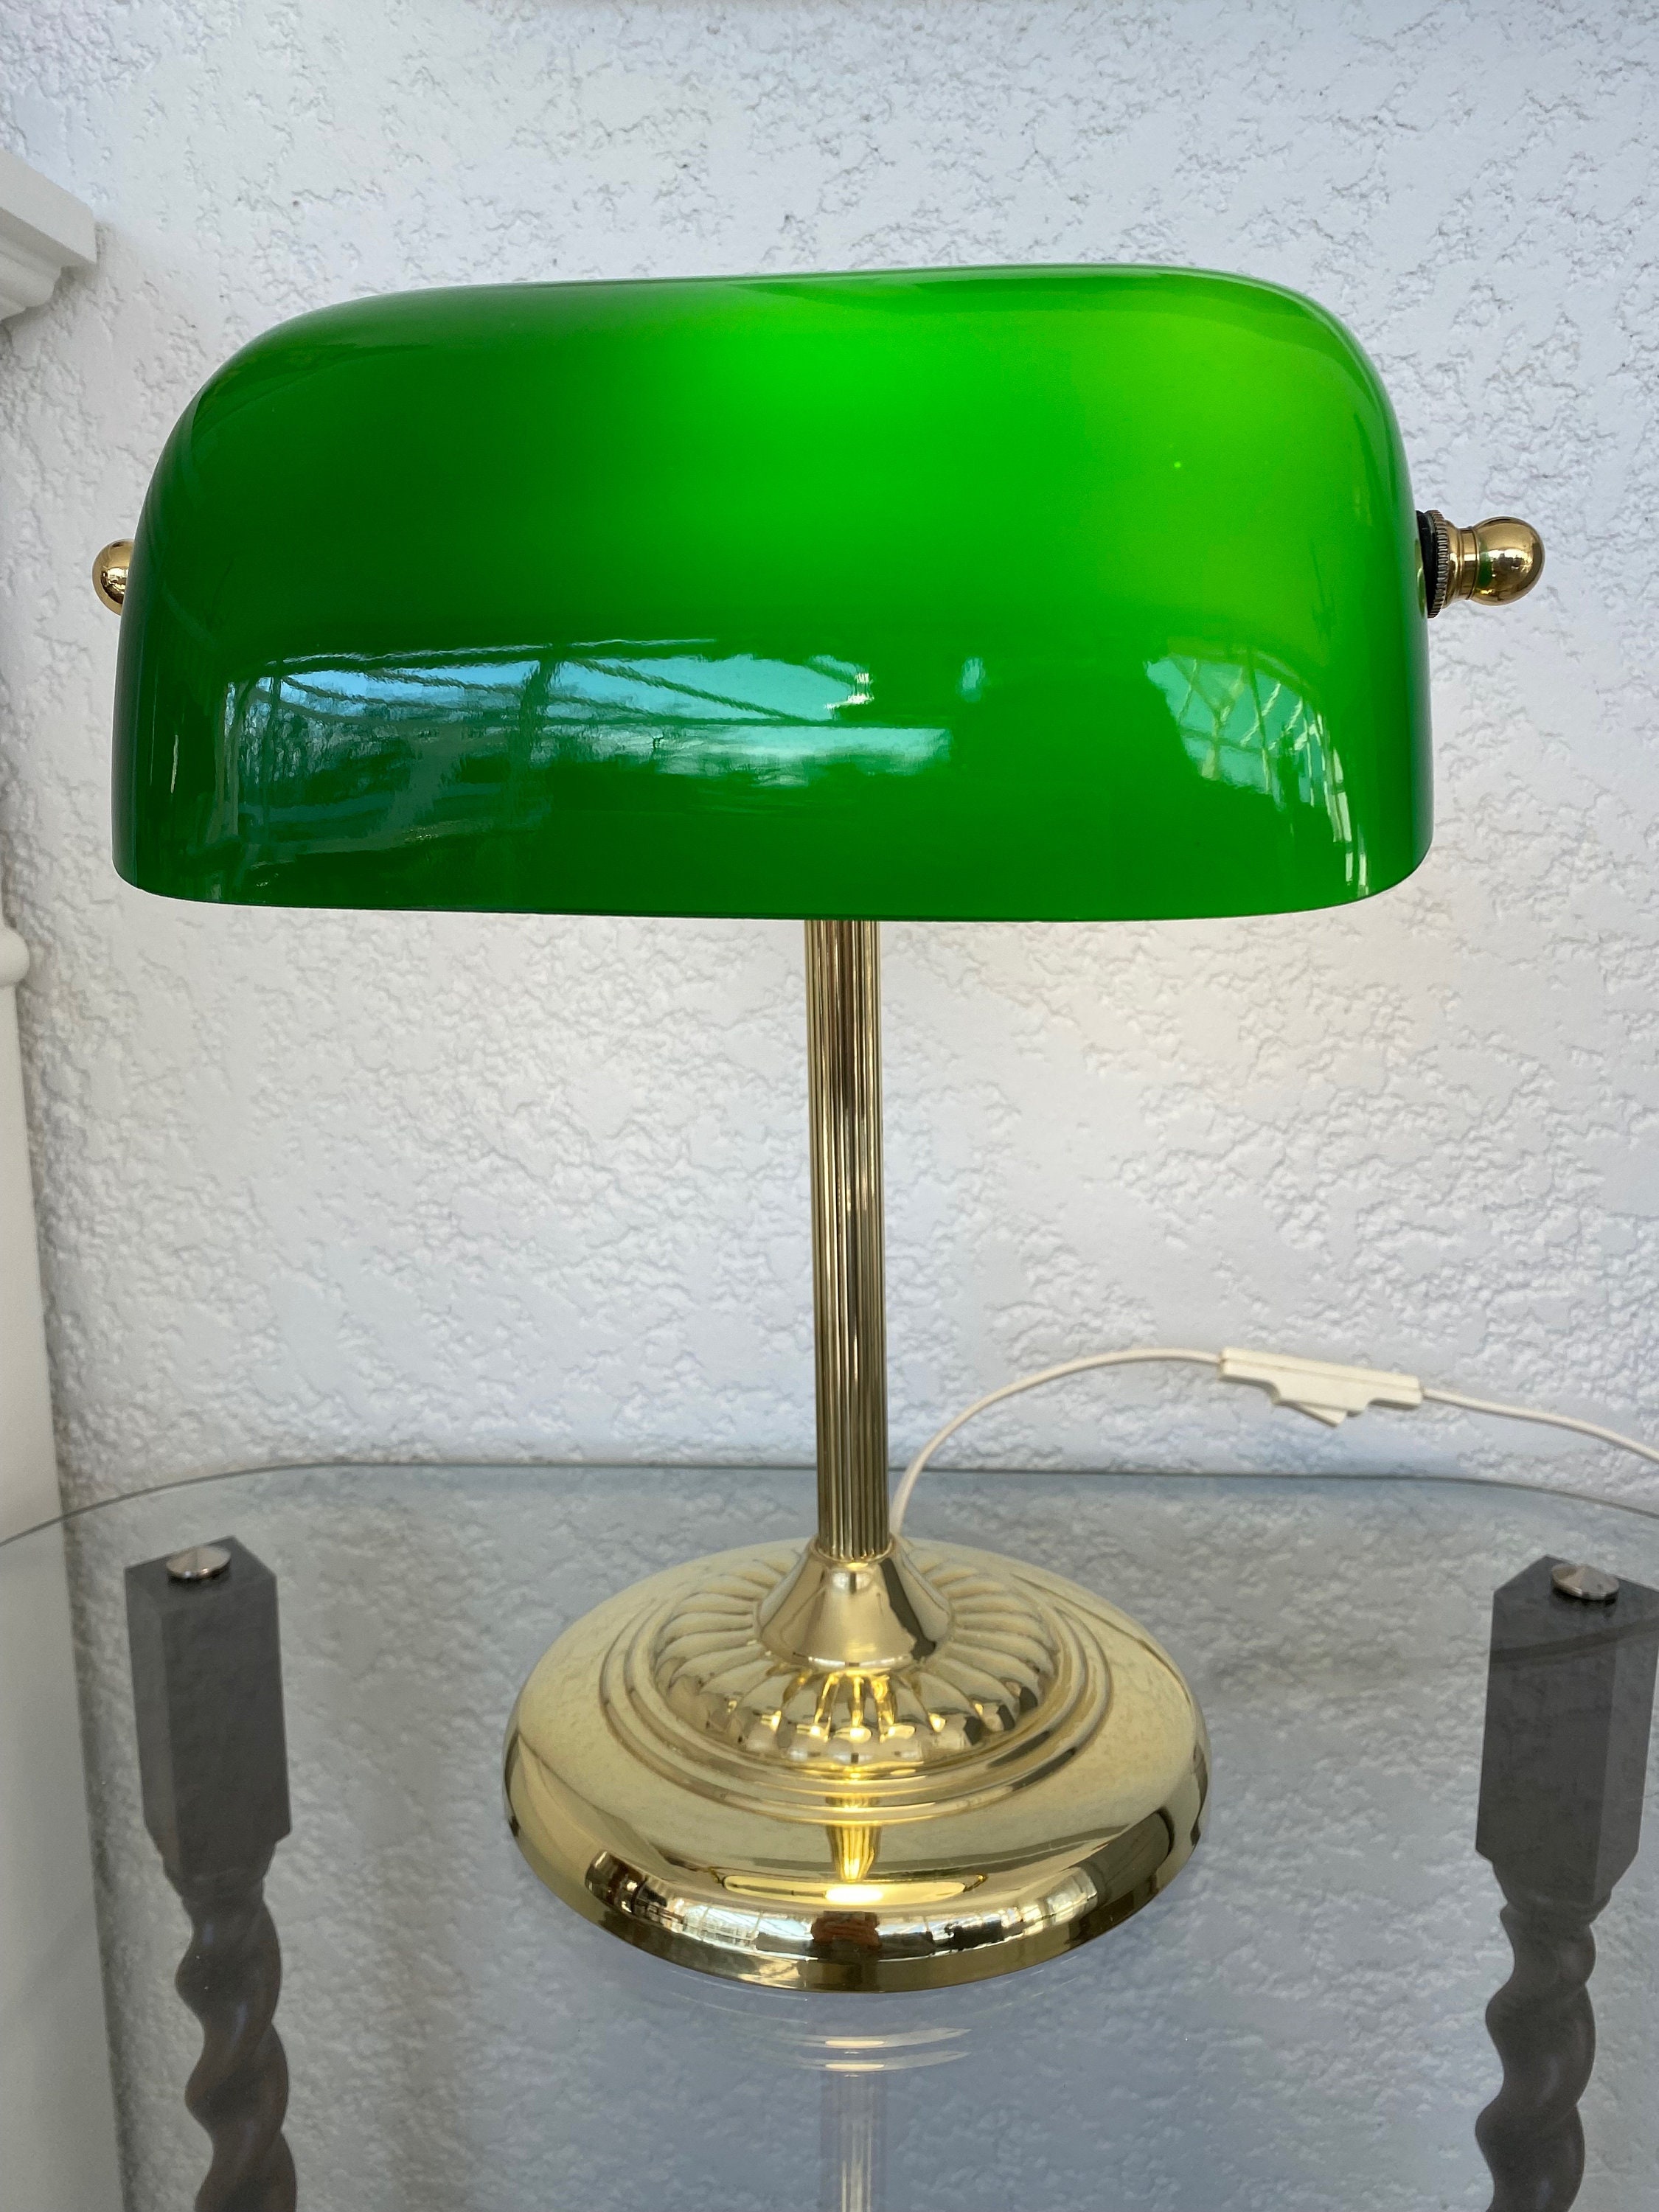 Pack] Lampe de table LED RGB nostalgie lampe de banquier en laiton